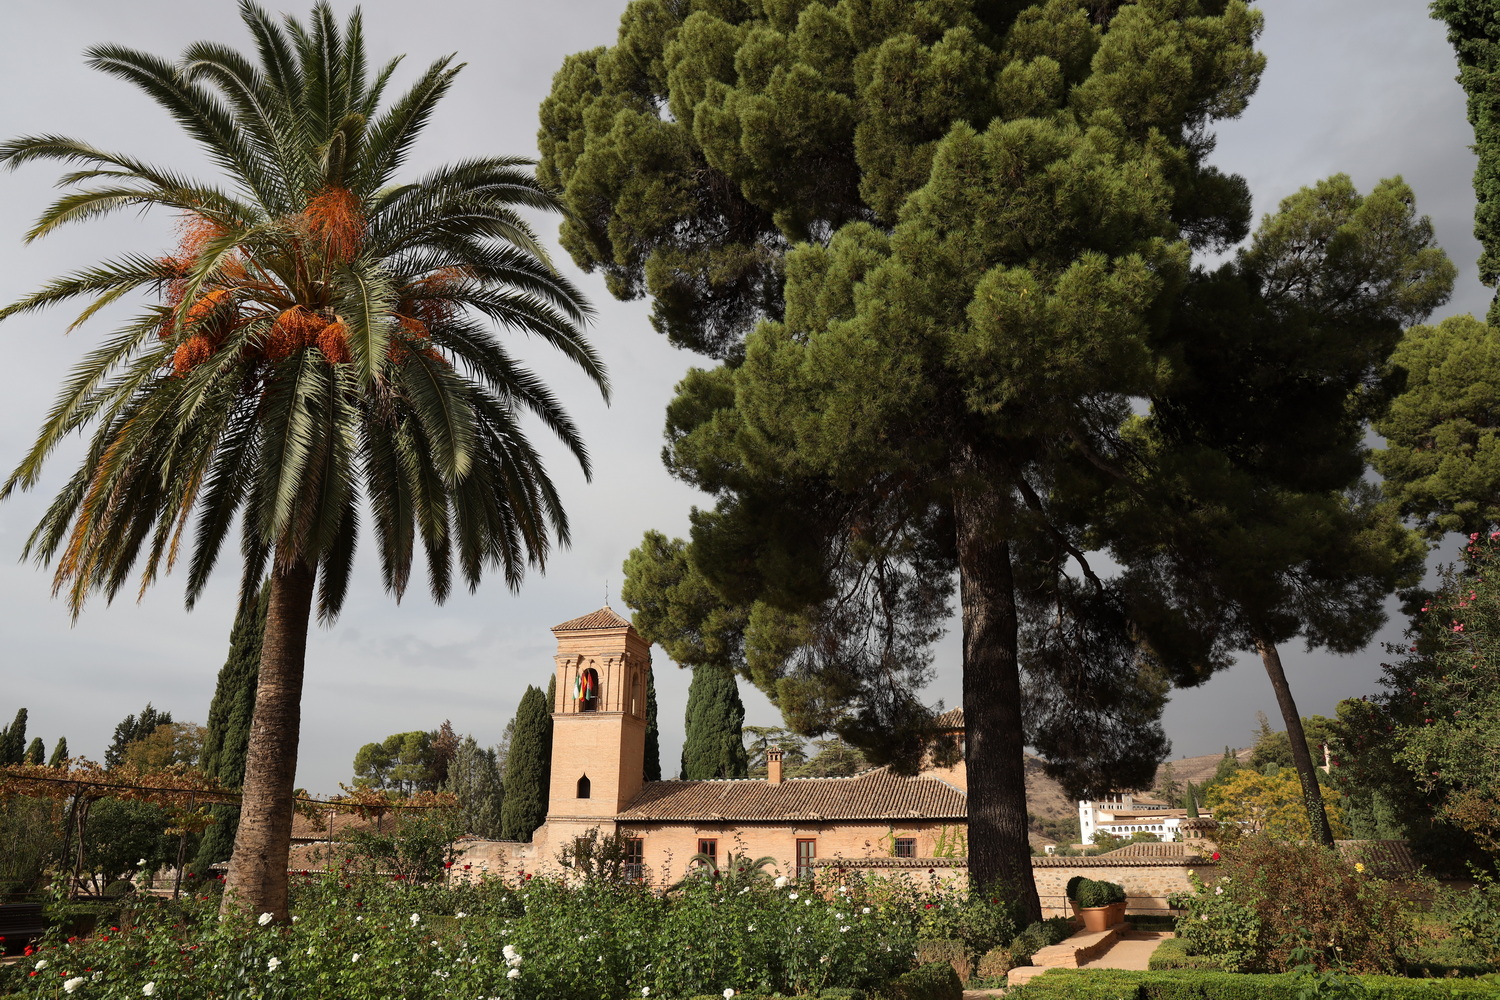 Gärten im Bereich der Medina mit dem Konvent des heiligen Franziskus